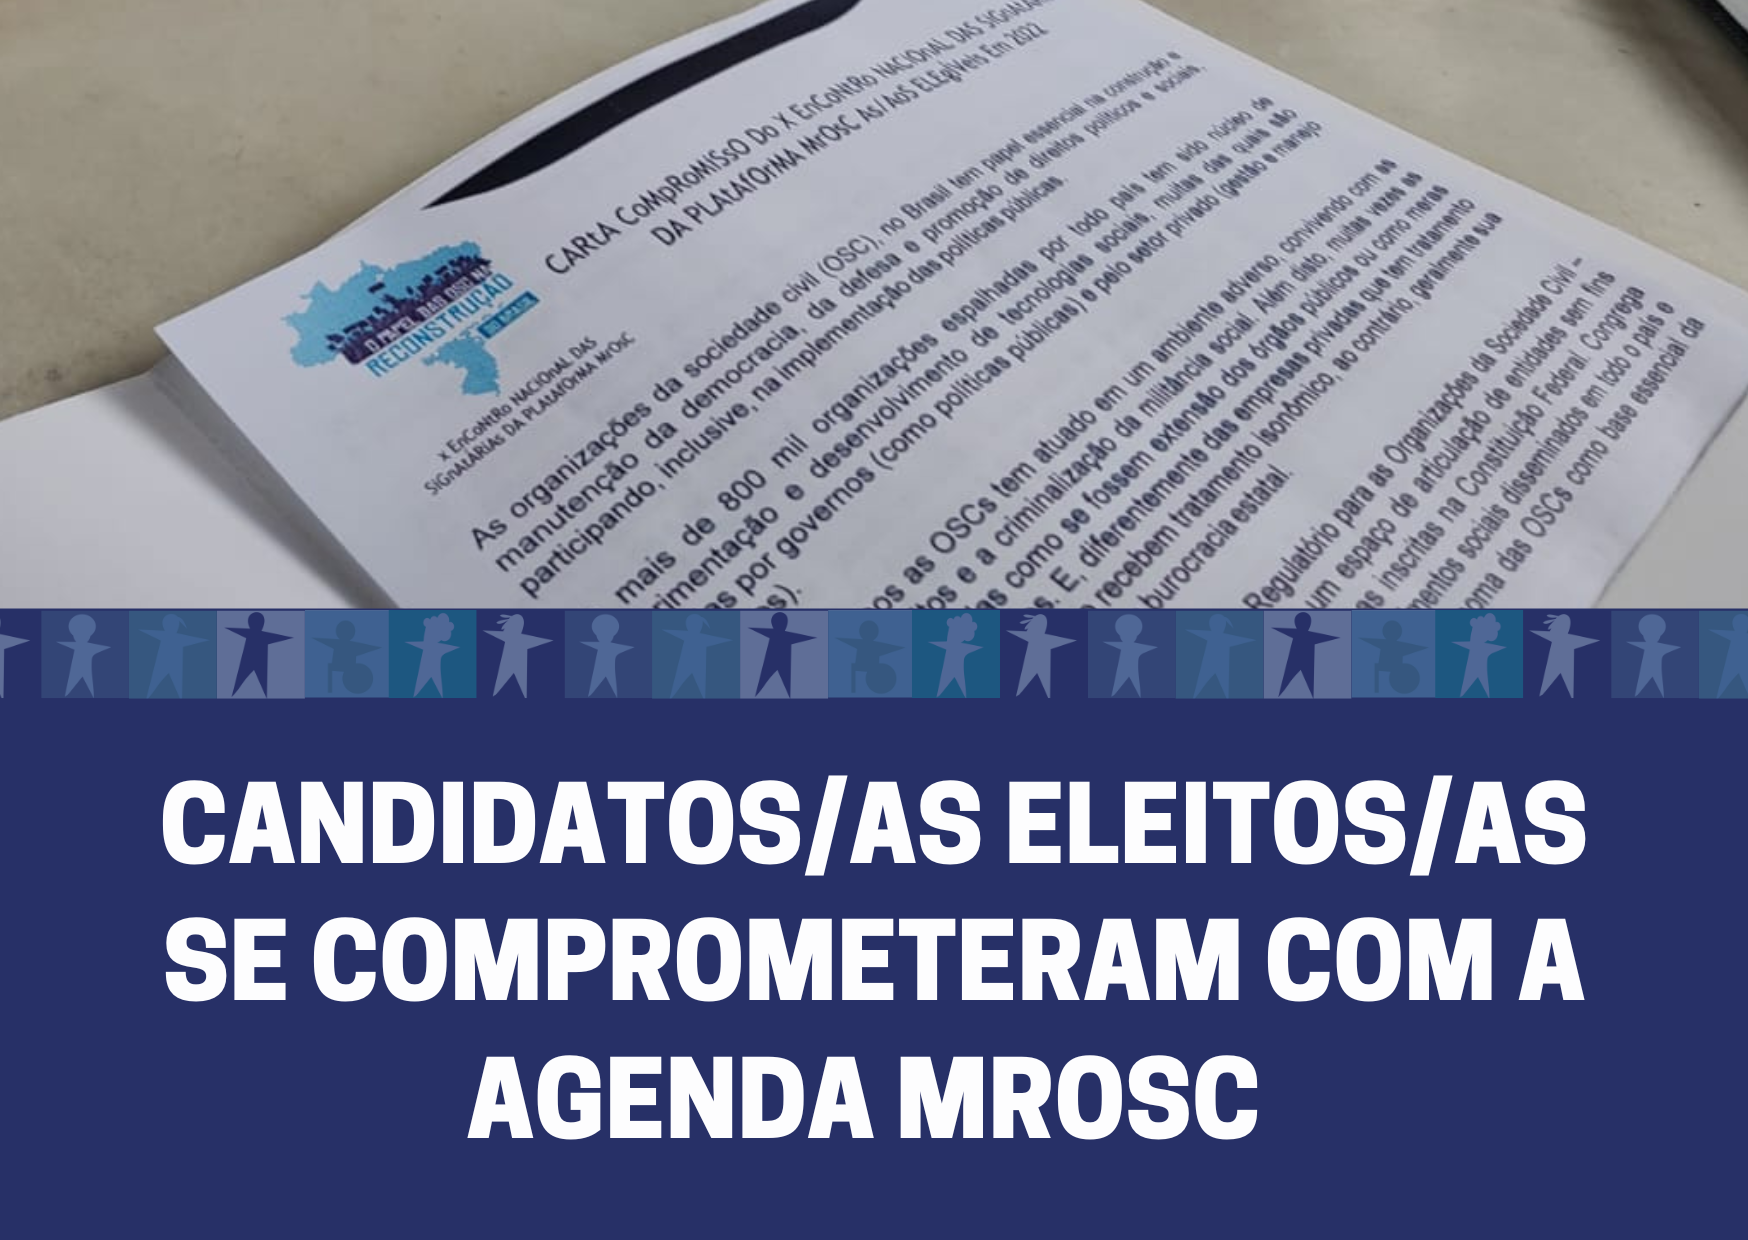 CANDIDATOS/AS ELEITOS/AS SE COMPROMETERAM COM A AGENDA MROSC